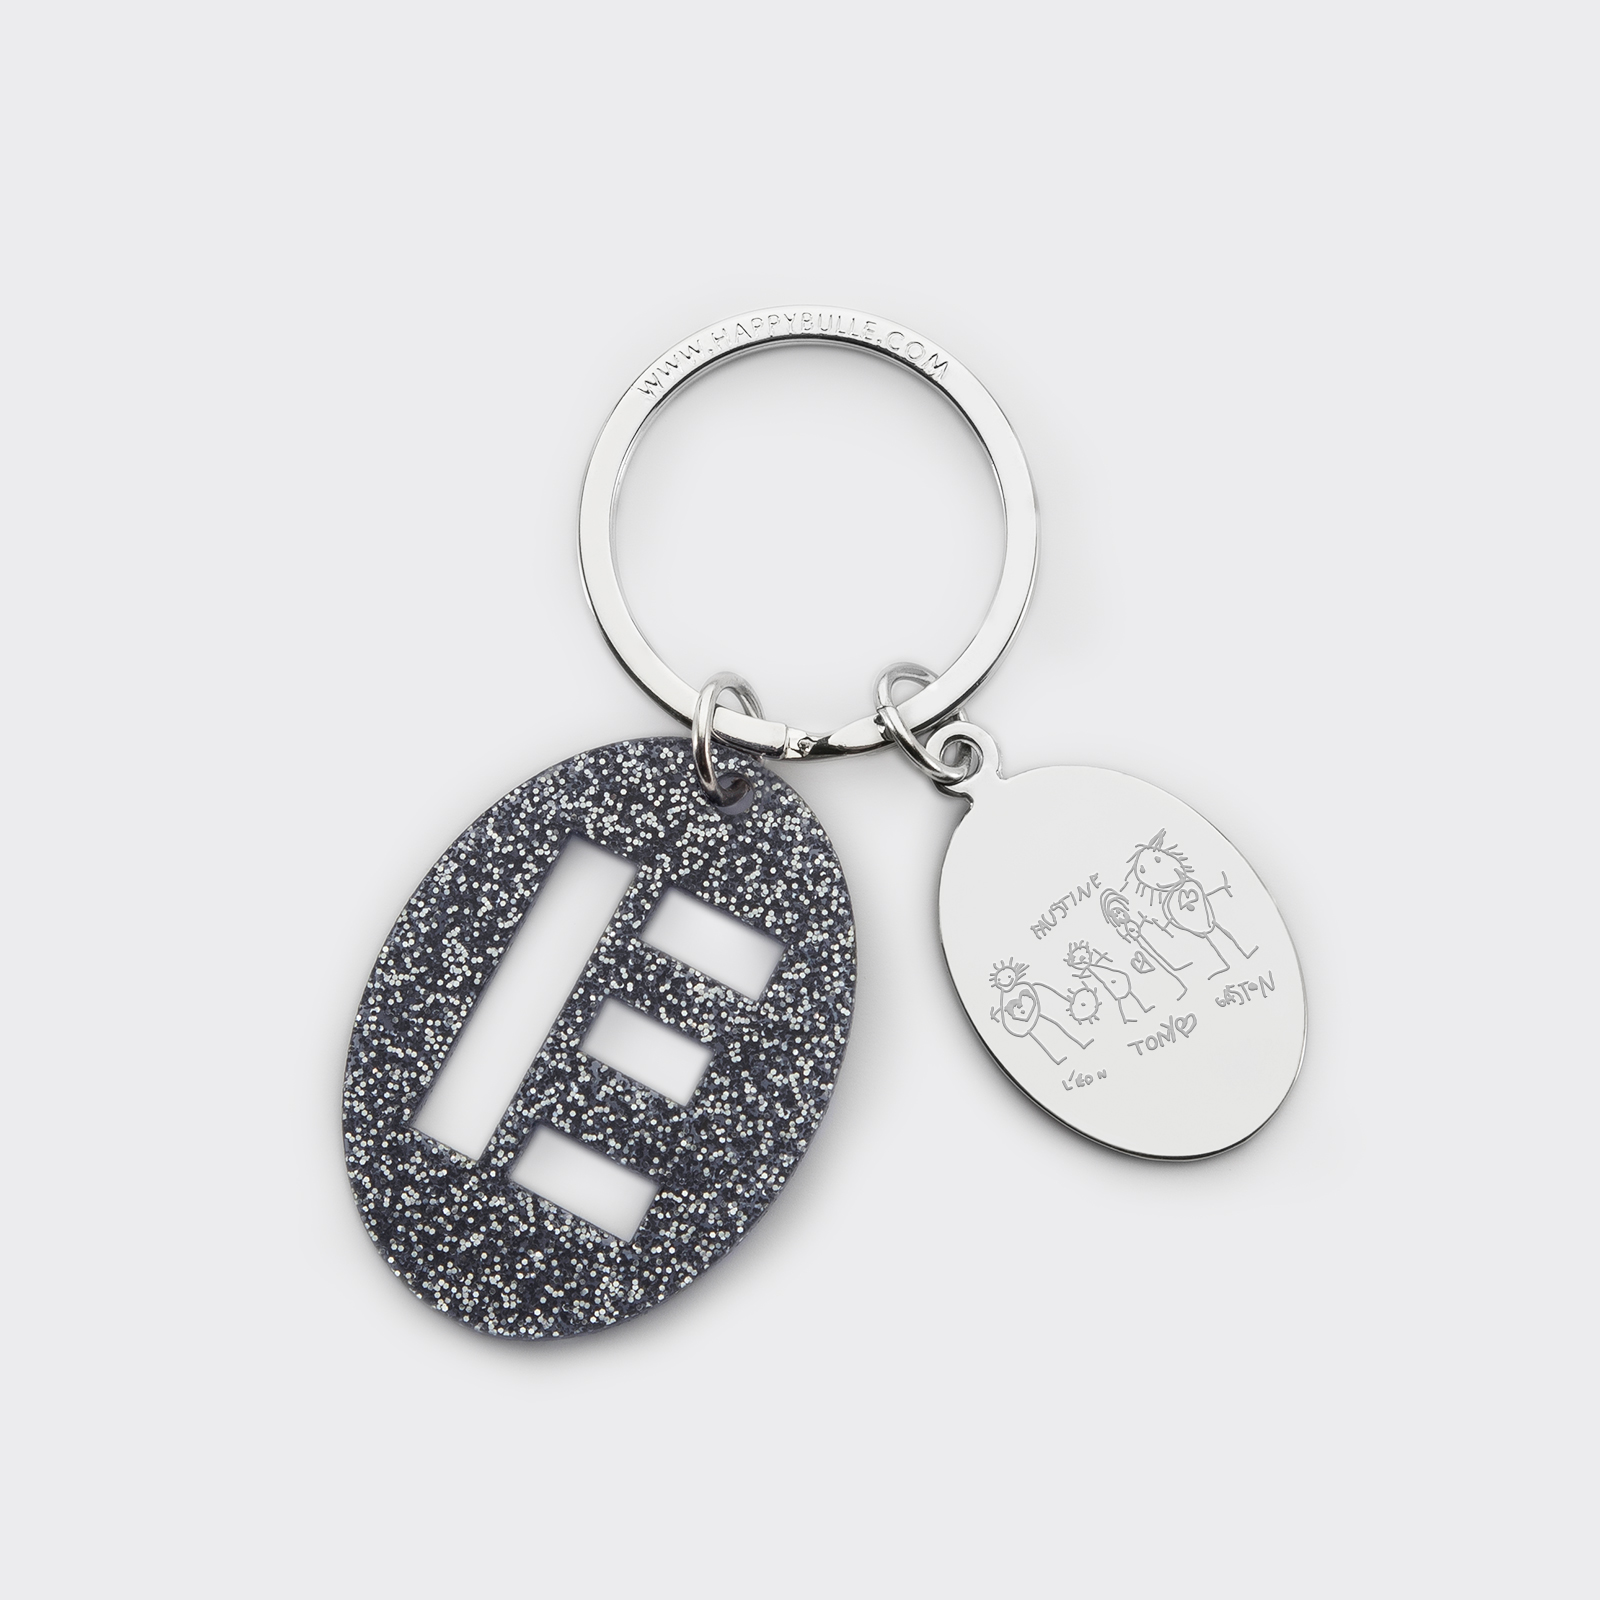 Porte-clés personnalisé médaille gravée ovale acier et breloque initiale acrylique pailleté